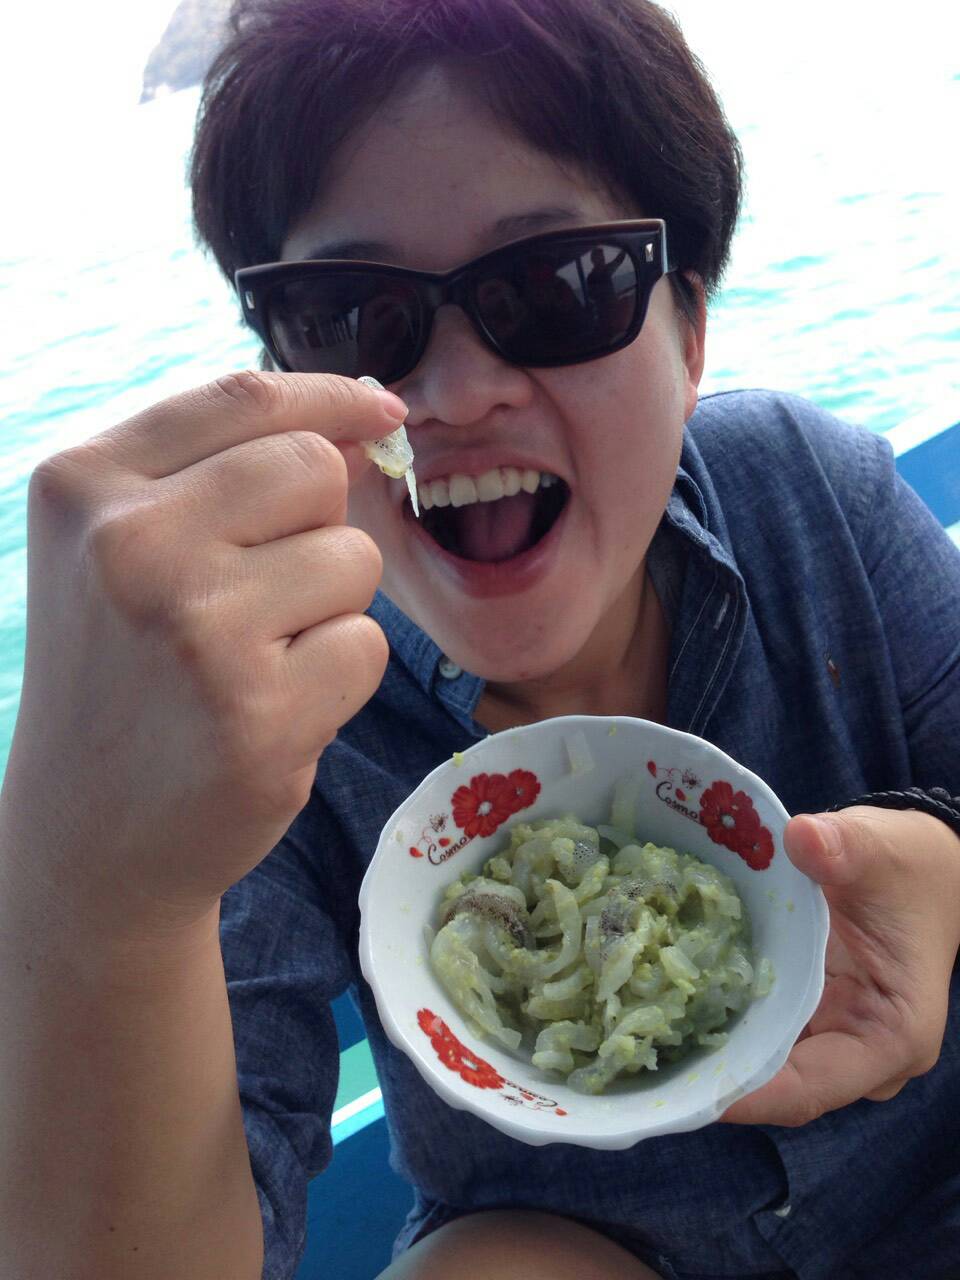 หันมาดูอีกทีอ้าวปลาหมึกกลายเป็น Ika wasabi ไปซะแล้ว กะว่าจะเอามาทำซาชิมิซักหน่อย :laughing: